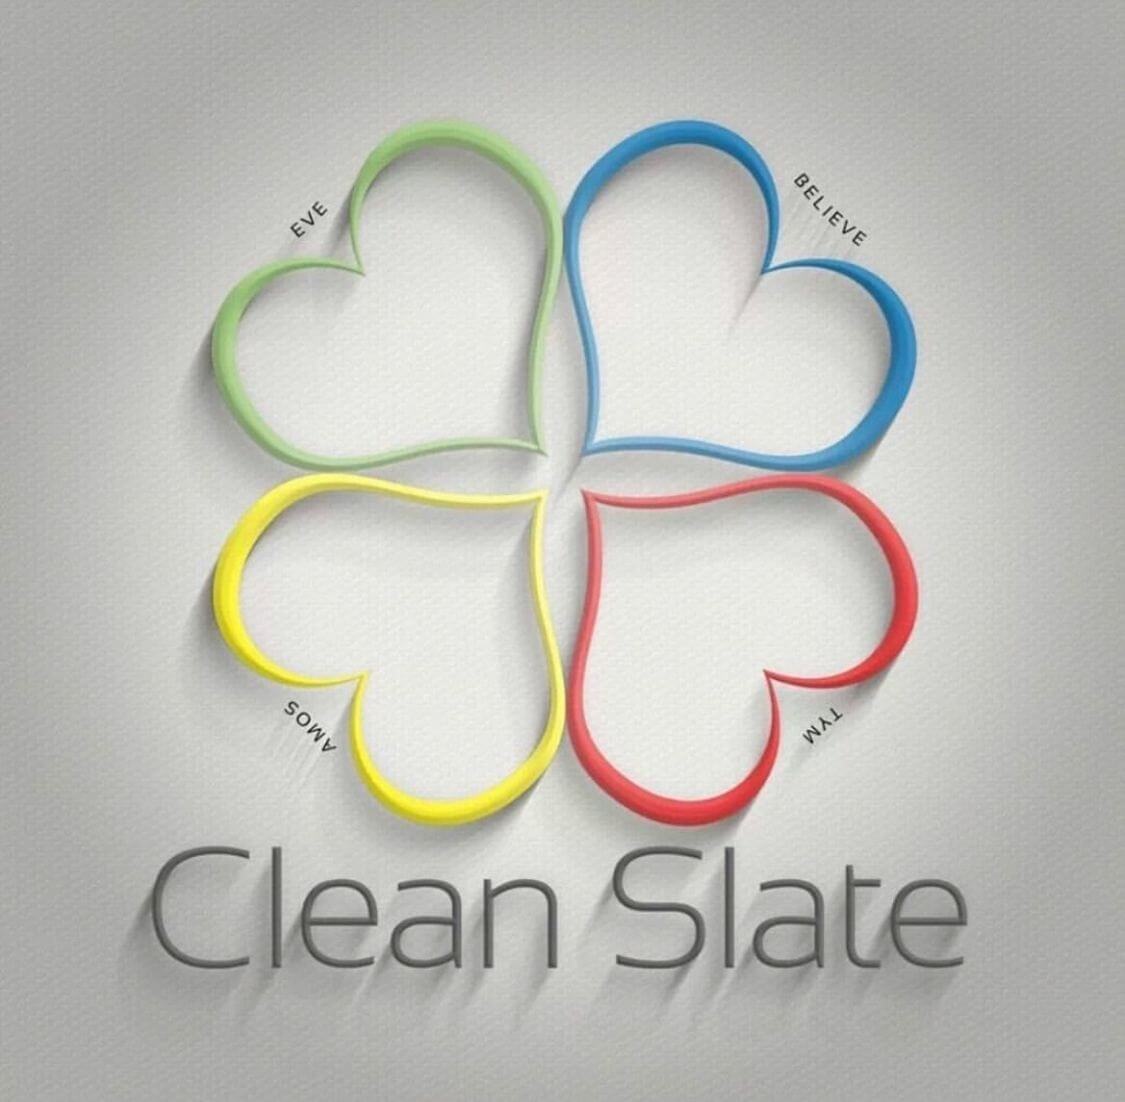 Clean Slate logo